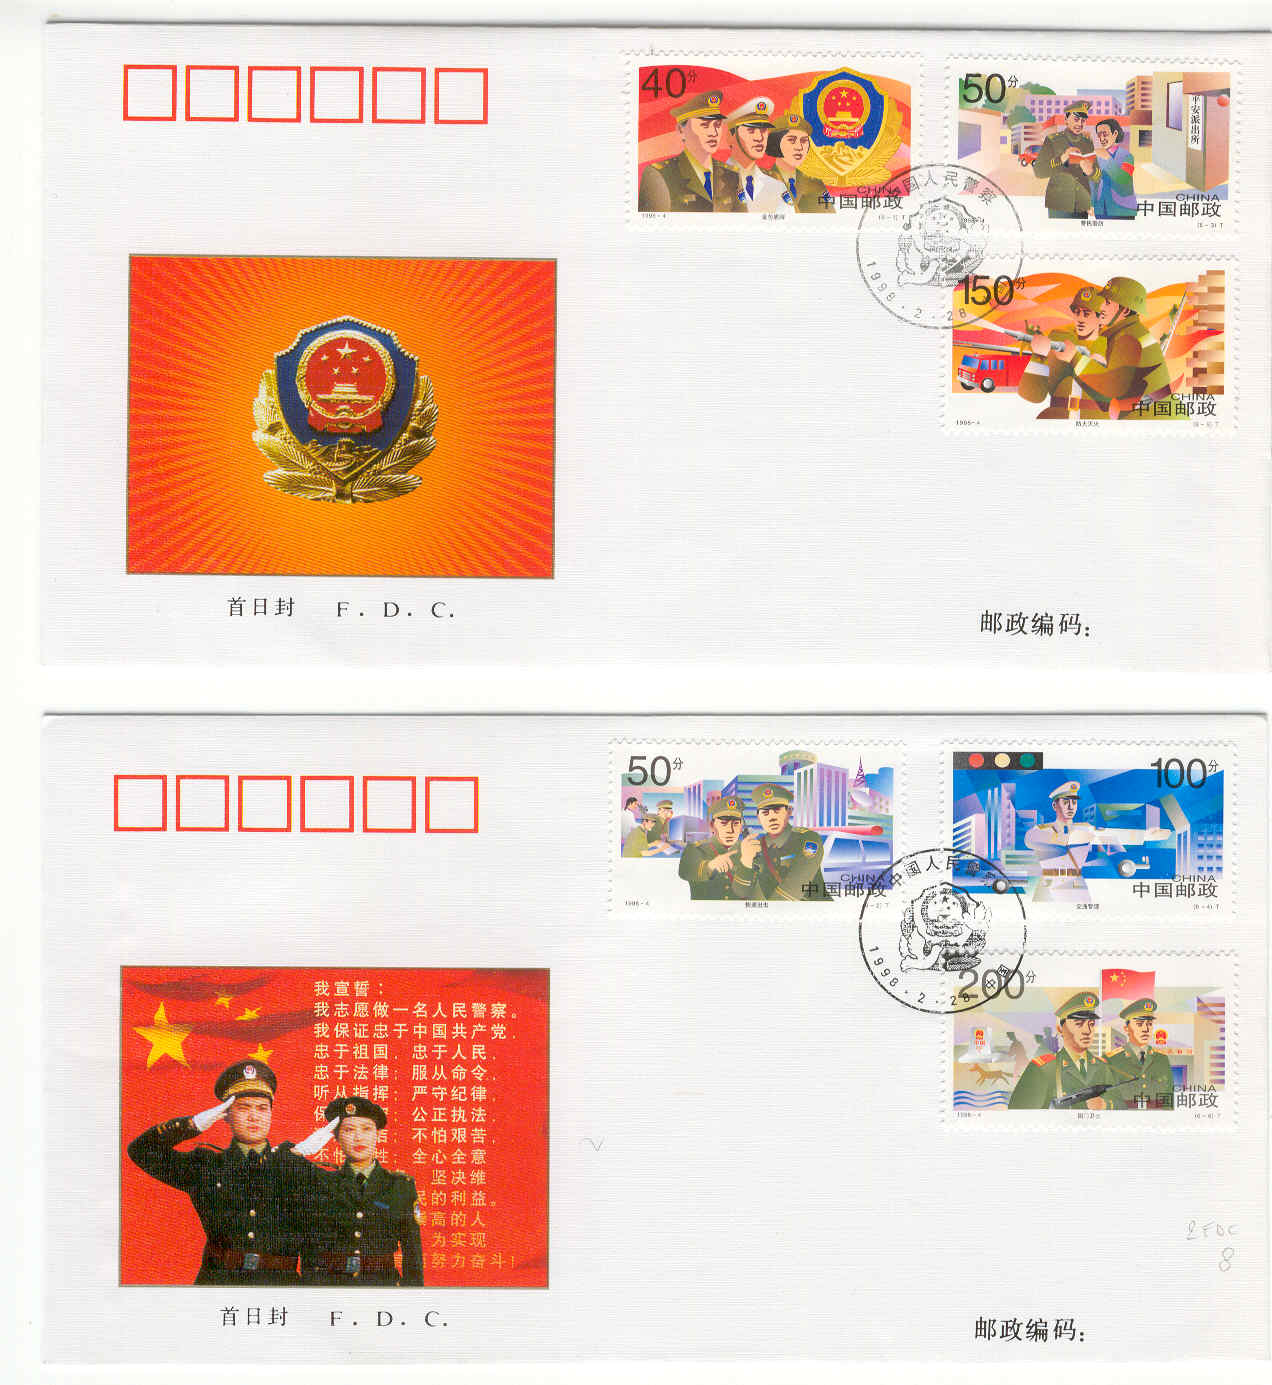 14347 - Cina - 2 buste fdc con serie completa: Forze di polizia e mezzi di soccorso